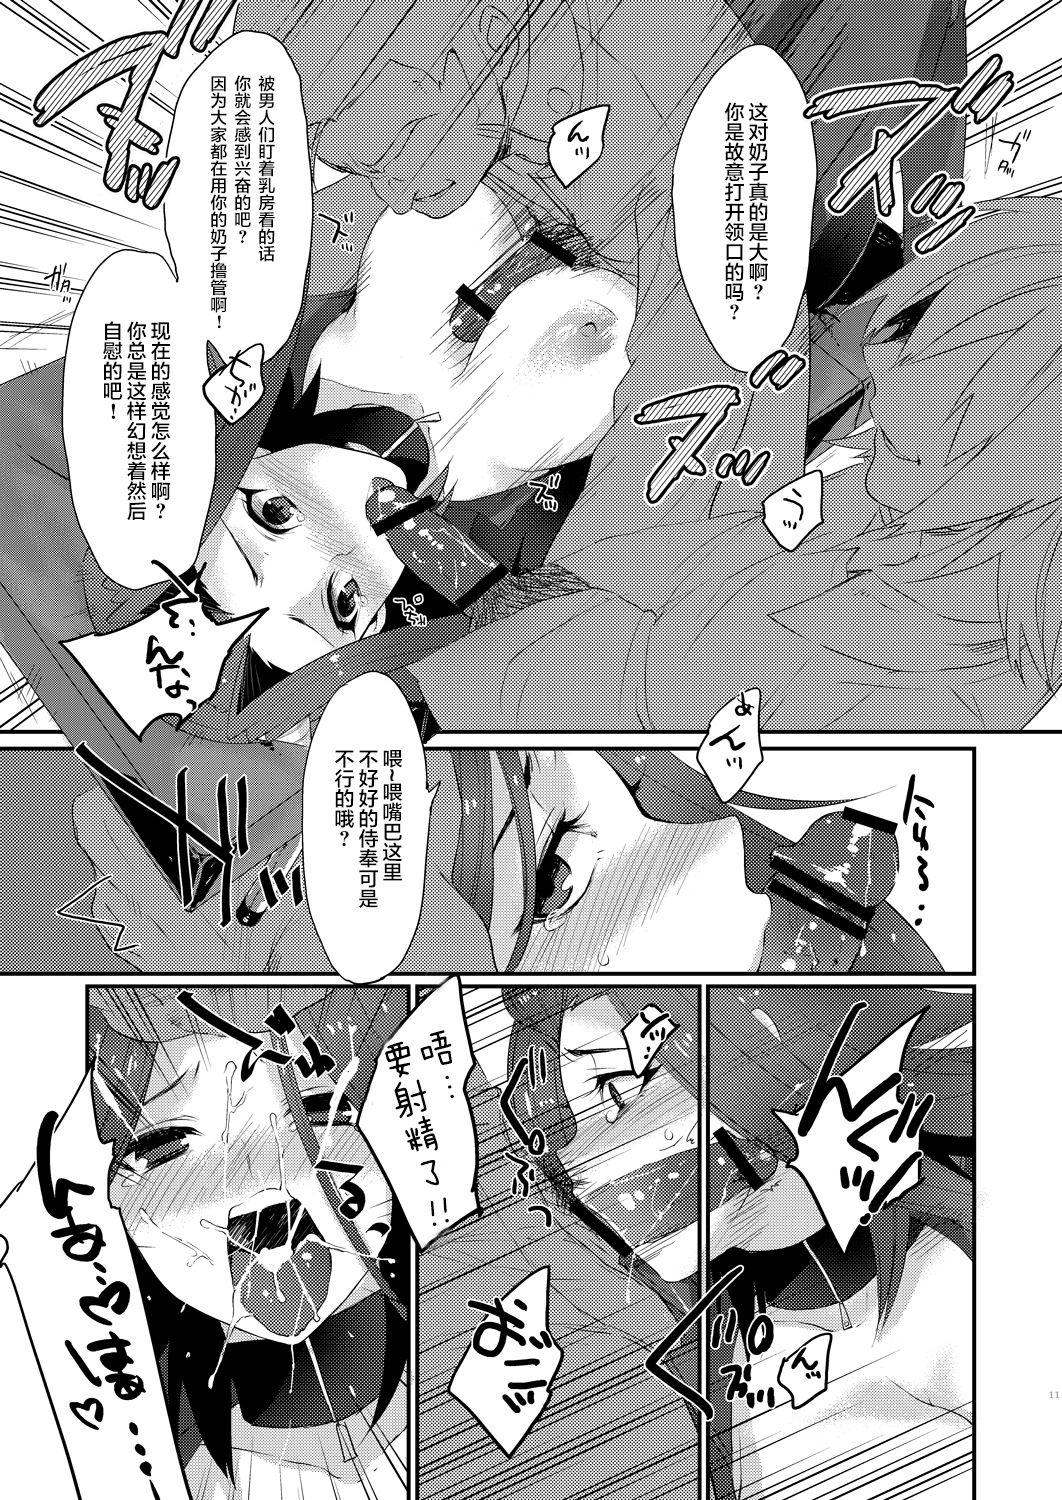 Bisexual Izayoi Emotion - Yu-gi-oh 5ds Pauzudo - Page 11